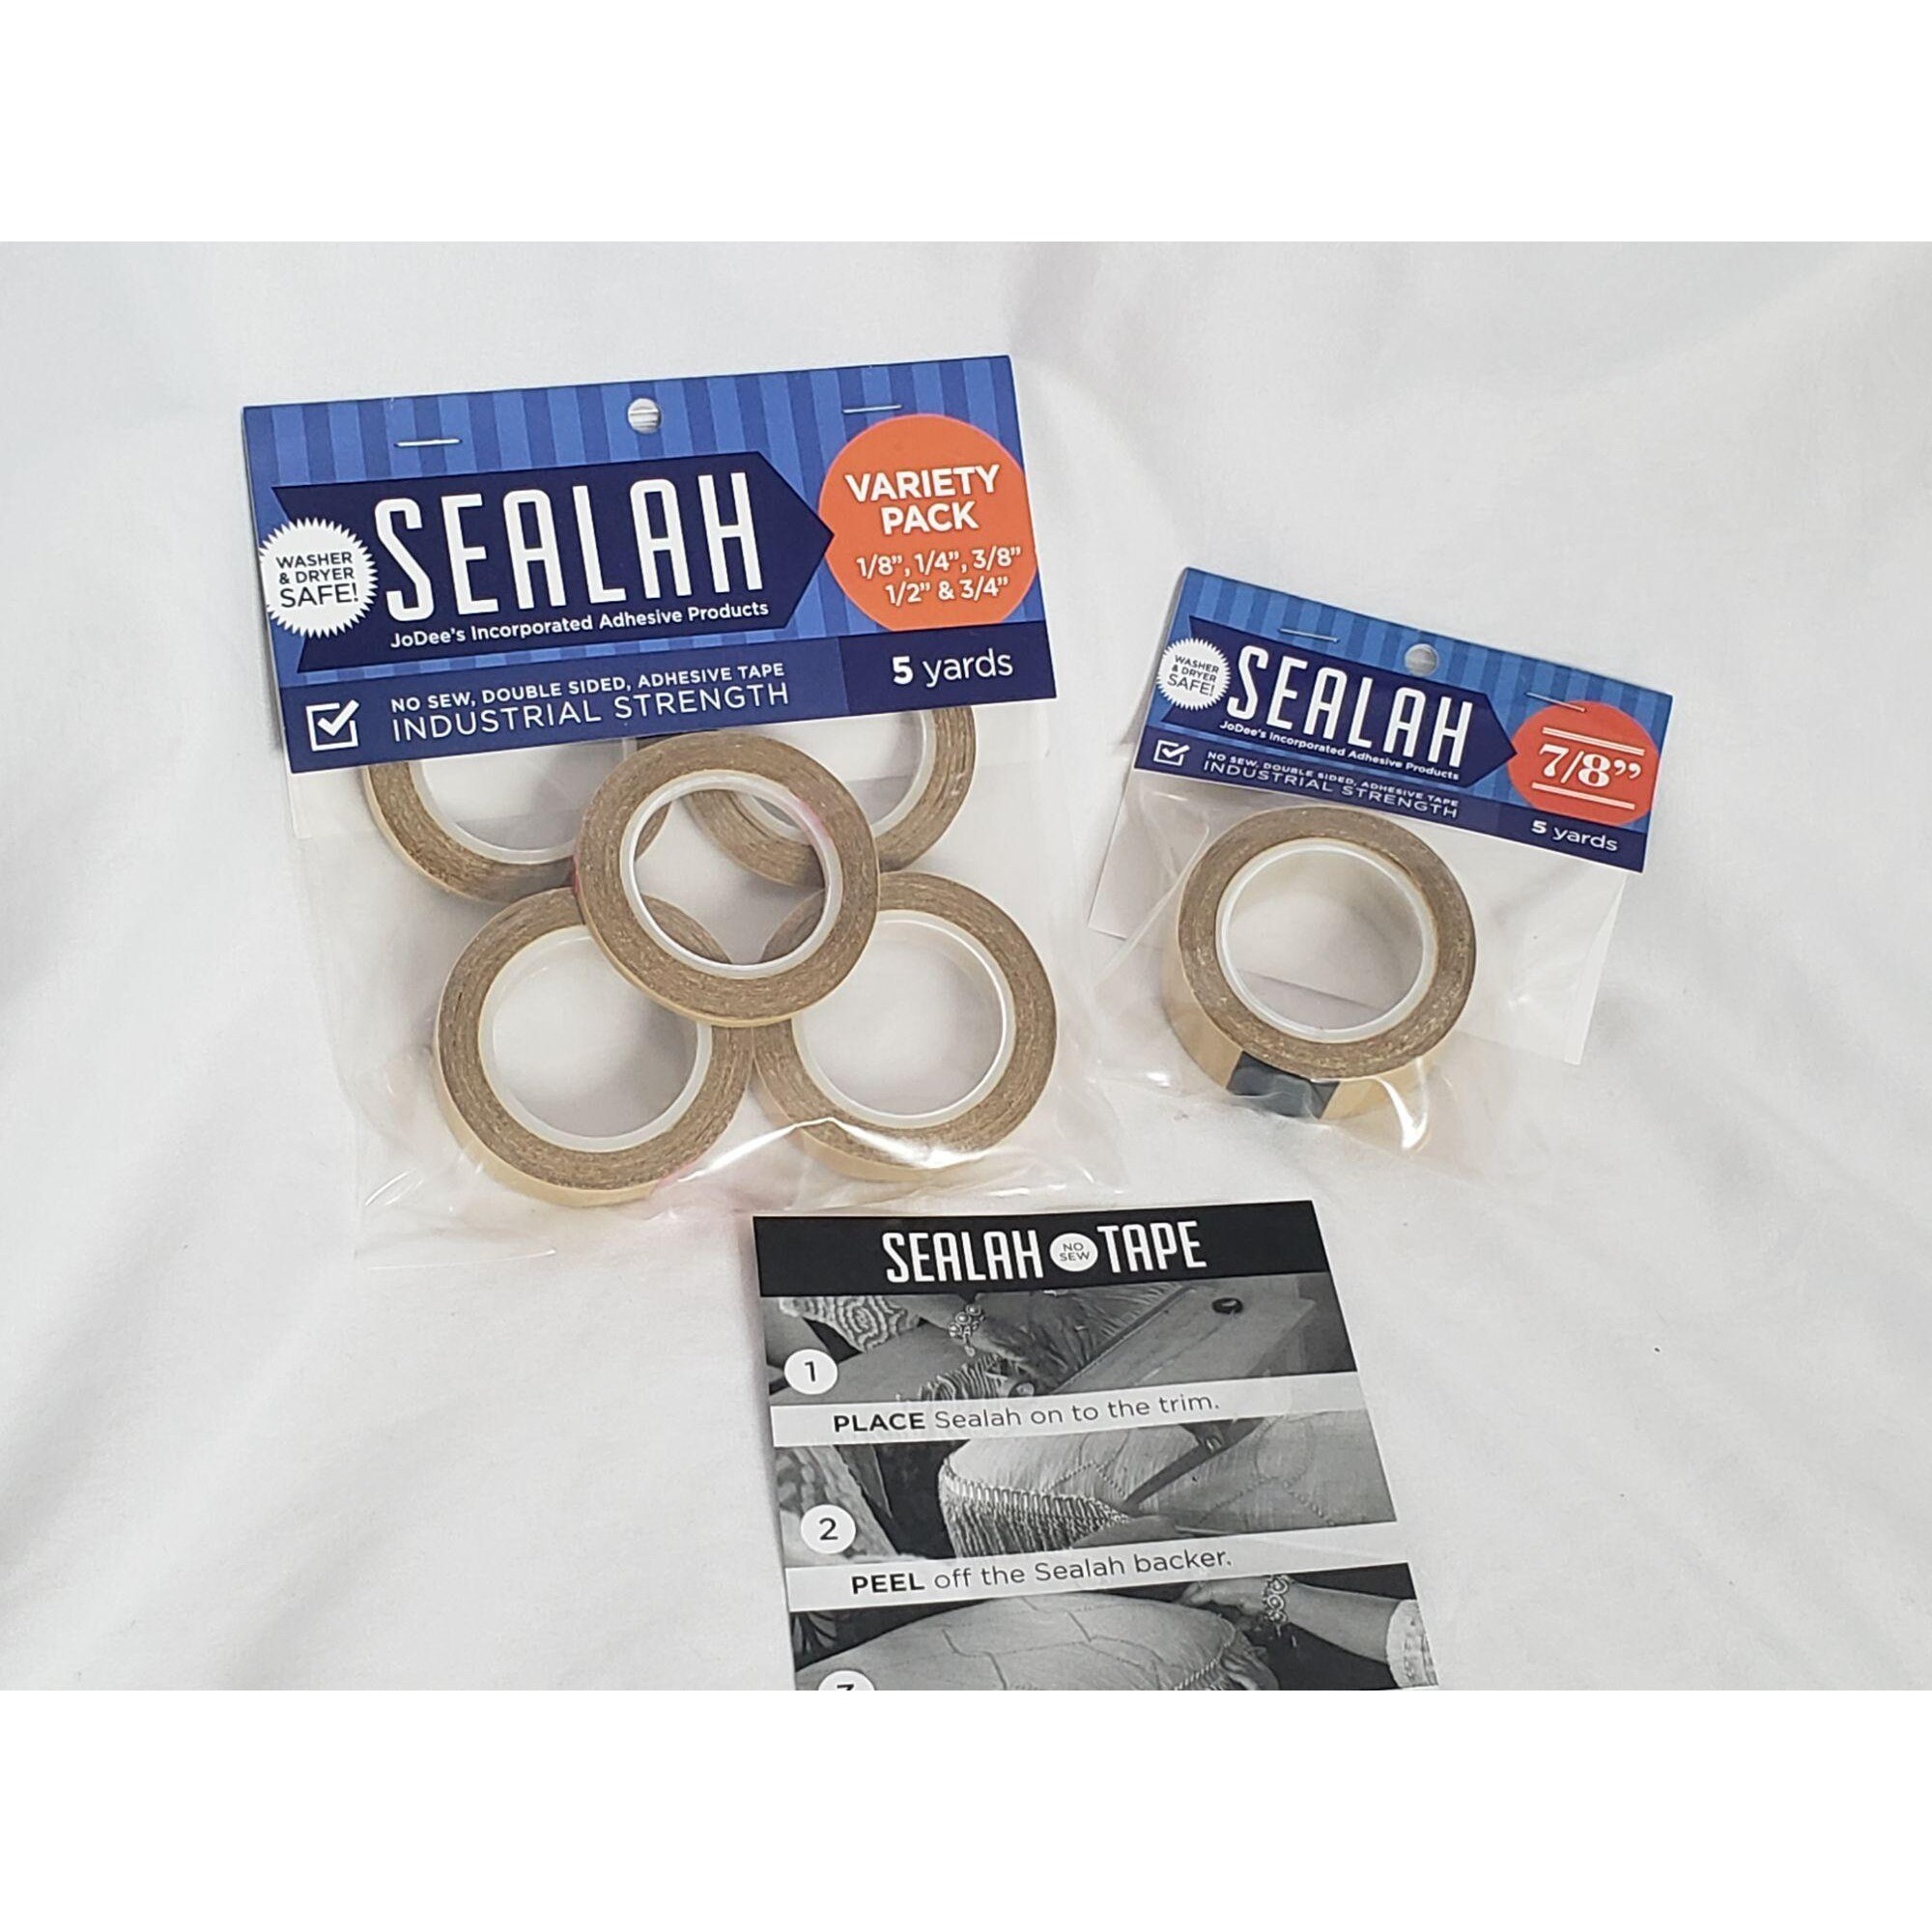 Sealah 1:2%22 no-sew adhesive in 2023